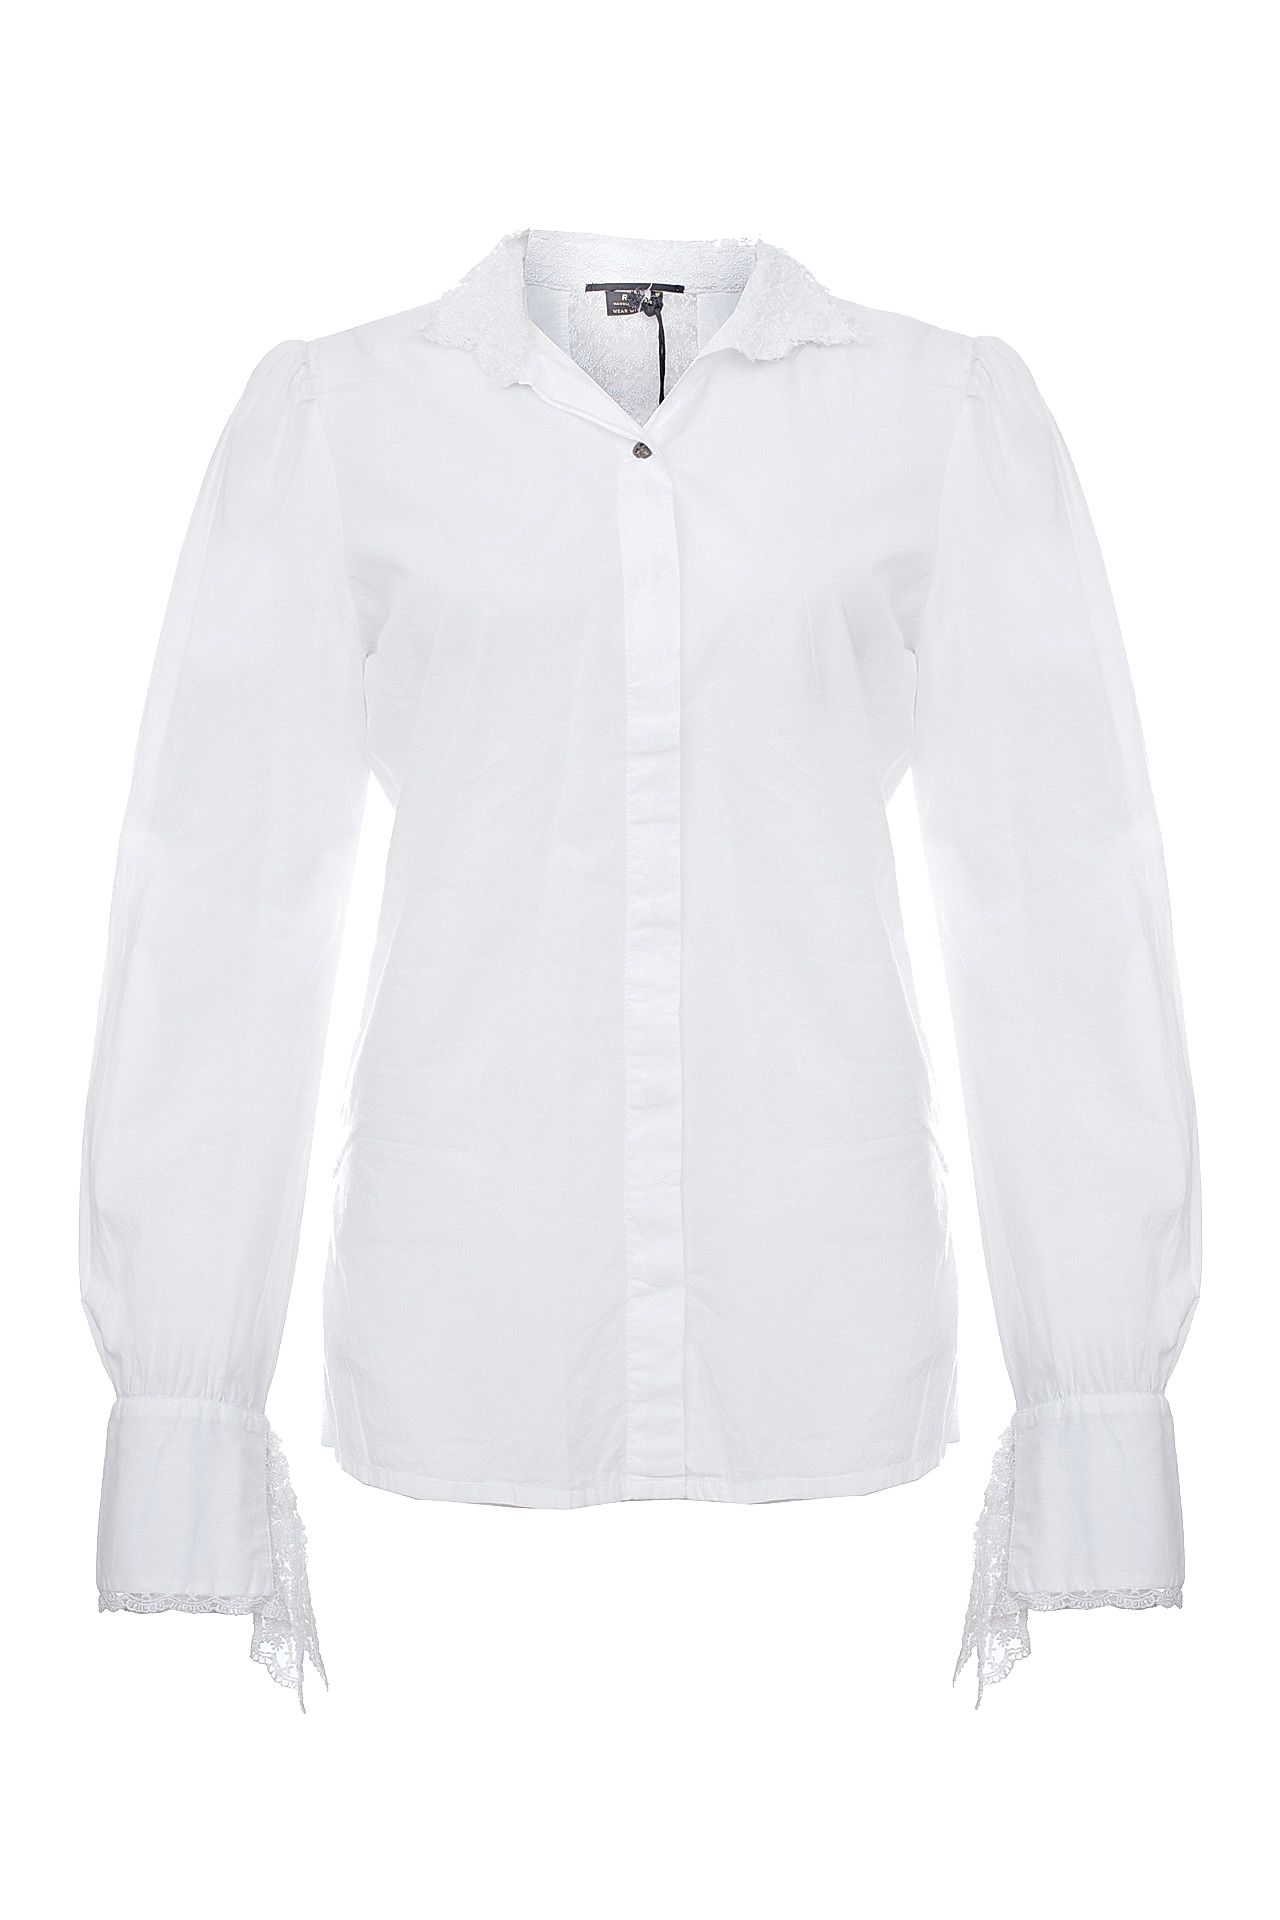 Одежда женская Рубашка RA-RE (WB6911/11.1). Купить за 3960 руб.